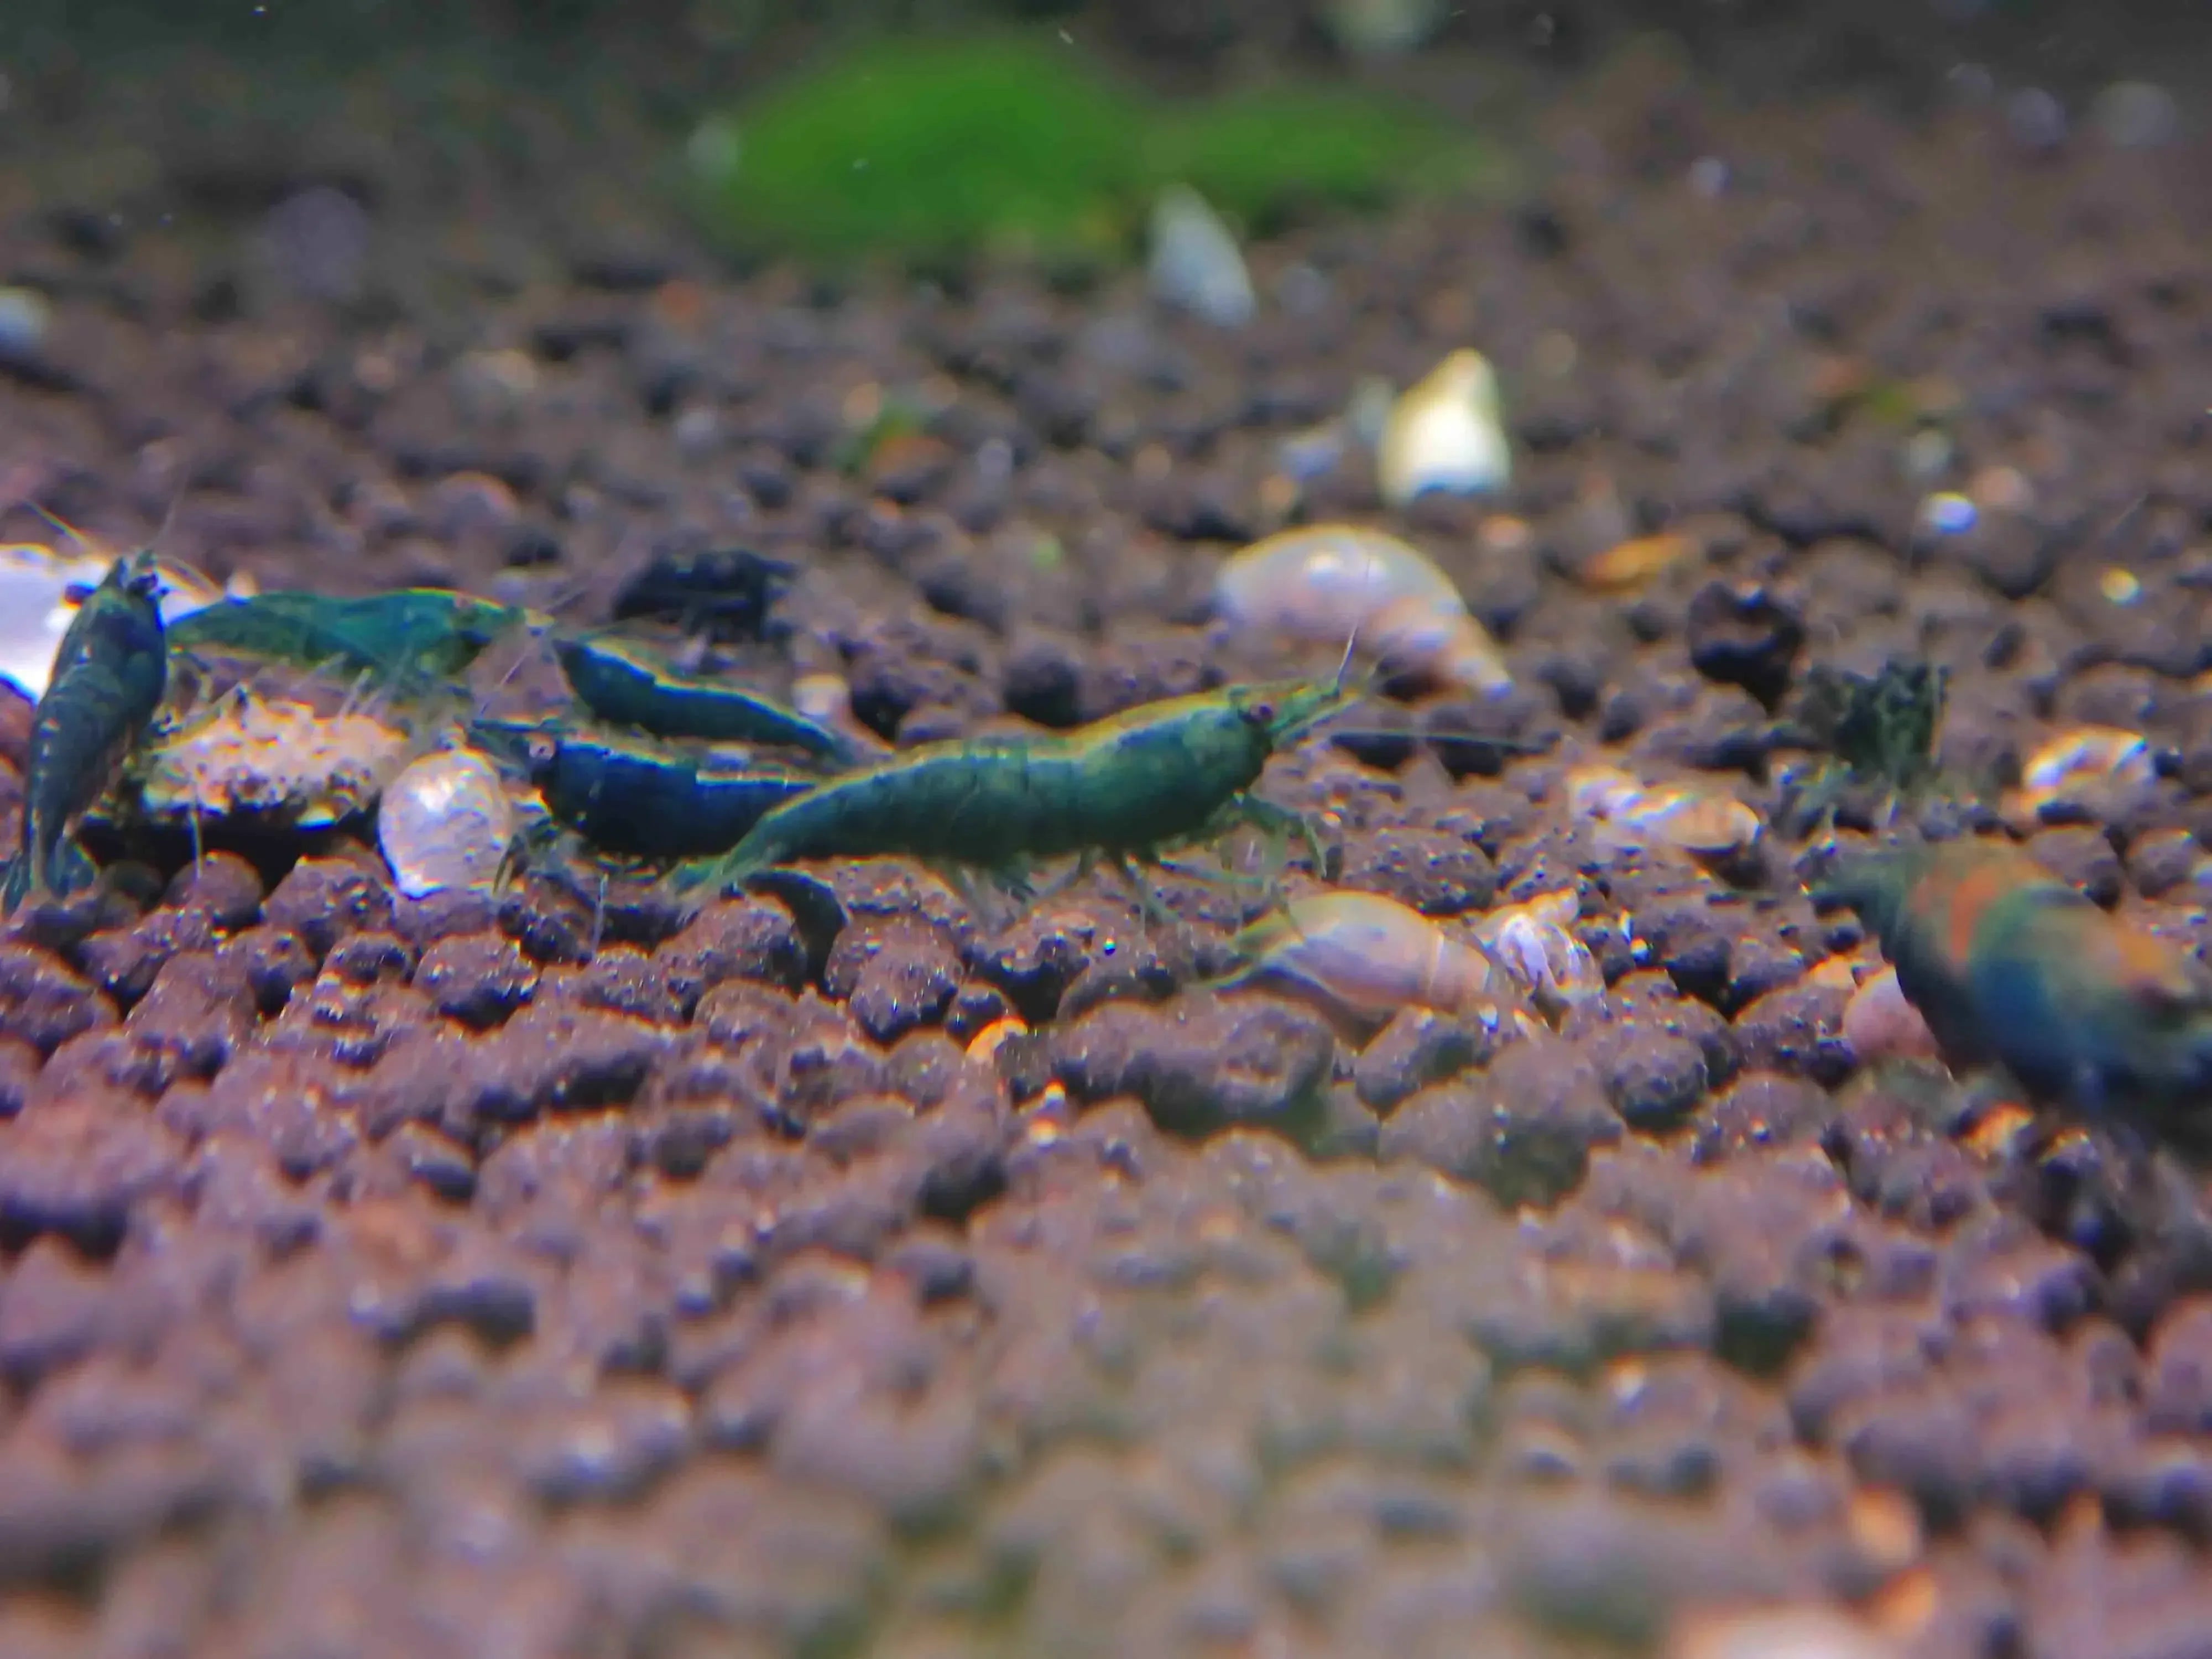 Emerald Green Cherry Shrimp - Rare